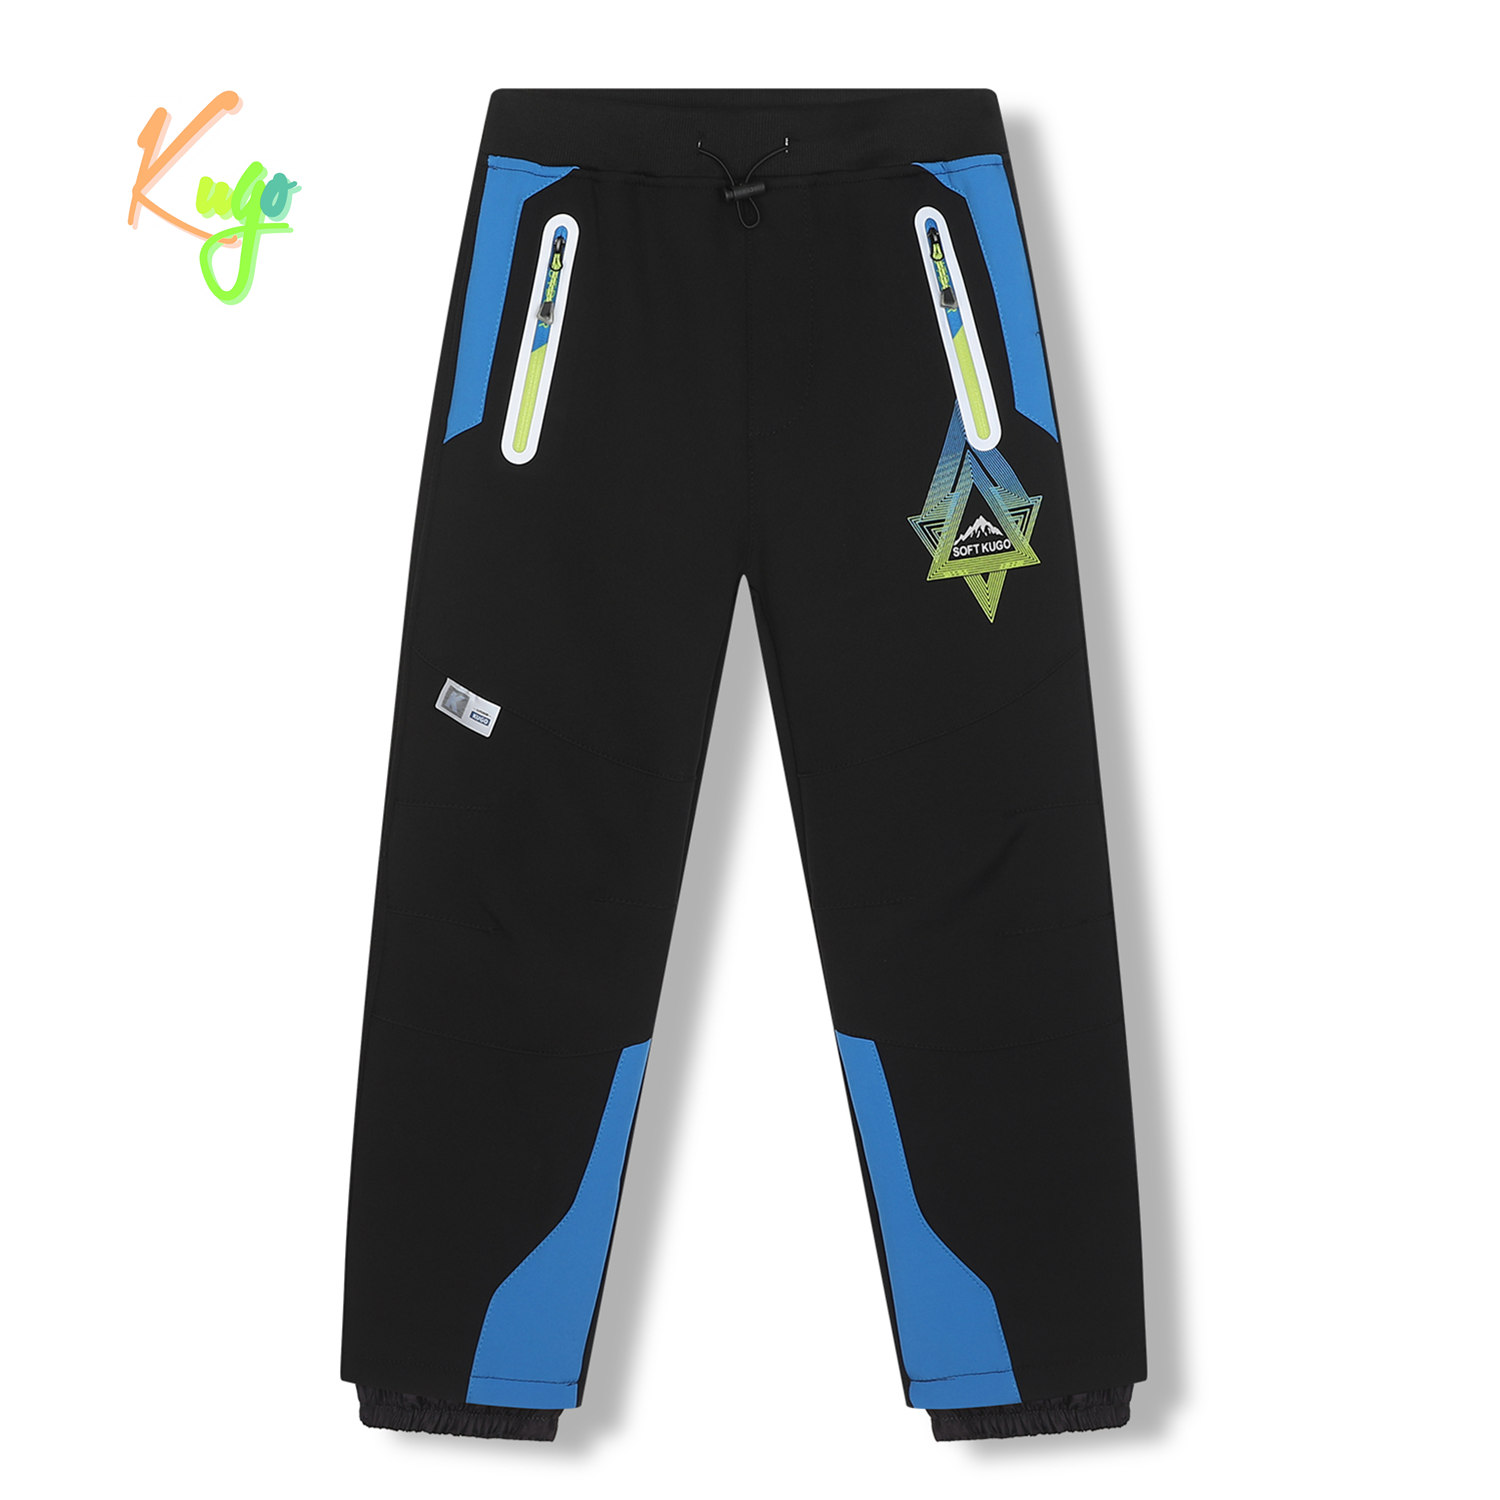 Chlapecké softshellové kalhoty, zateplené - KUGO HK5620, černá / modrá aplikace Barva: Černá, Velikost: 146